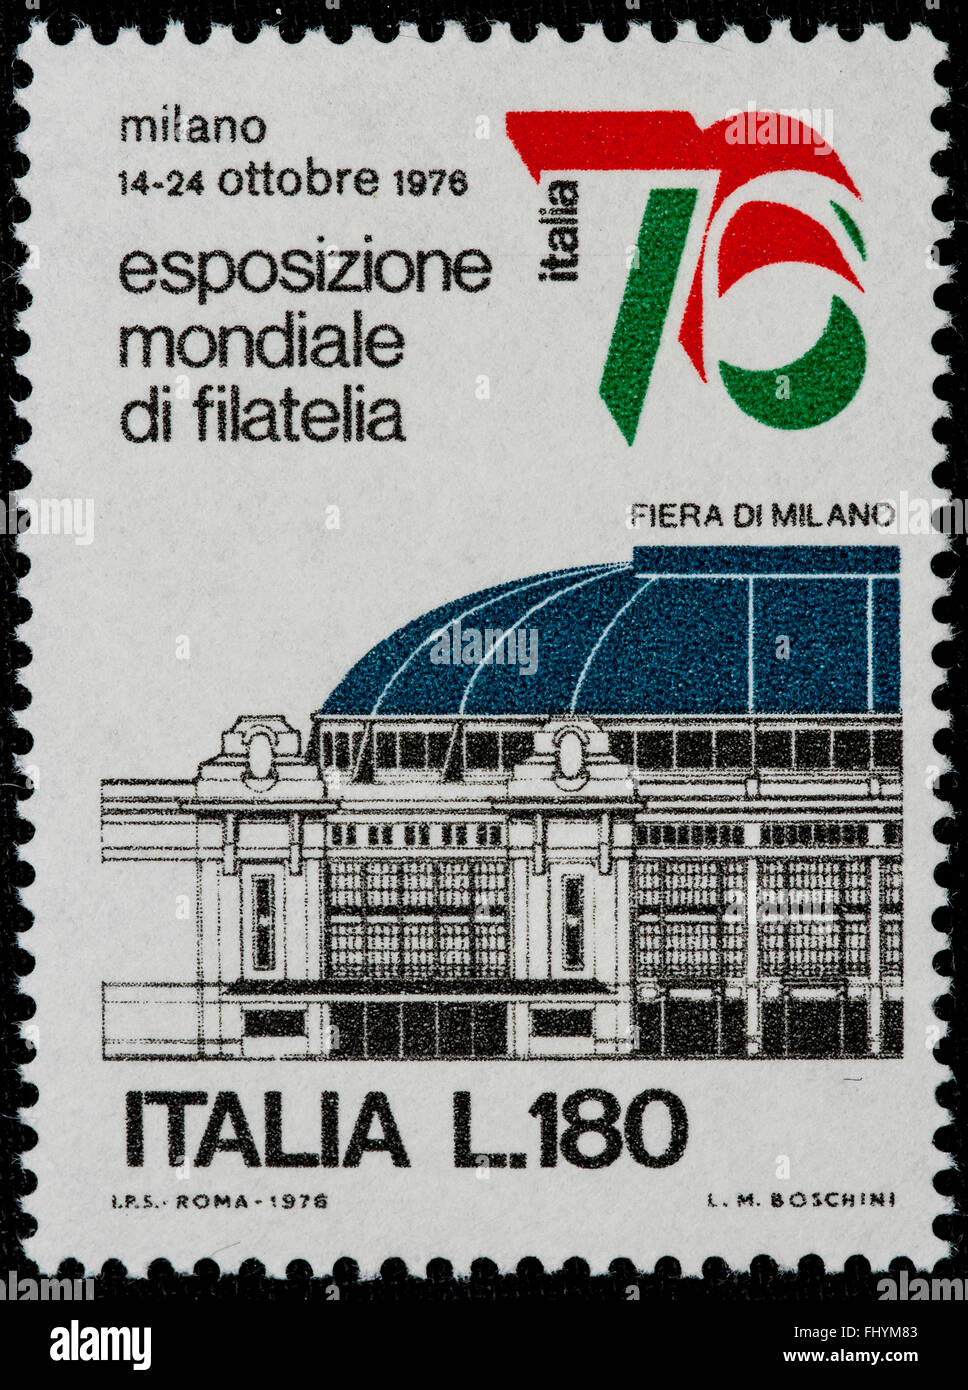 1976 - menta ITALIANO sello emitido para celebrar la expo filatelia en todo el mundo. 180 liras Foto de stock